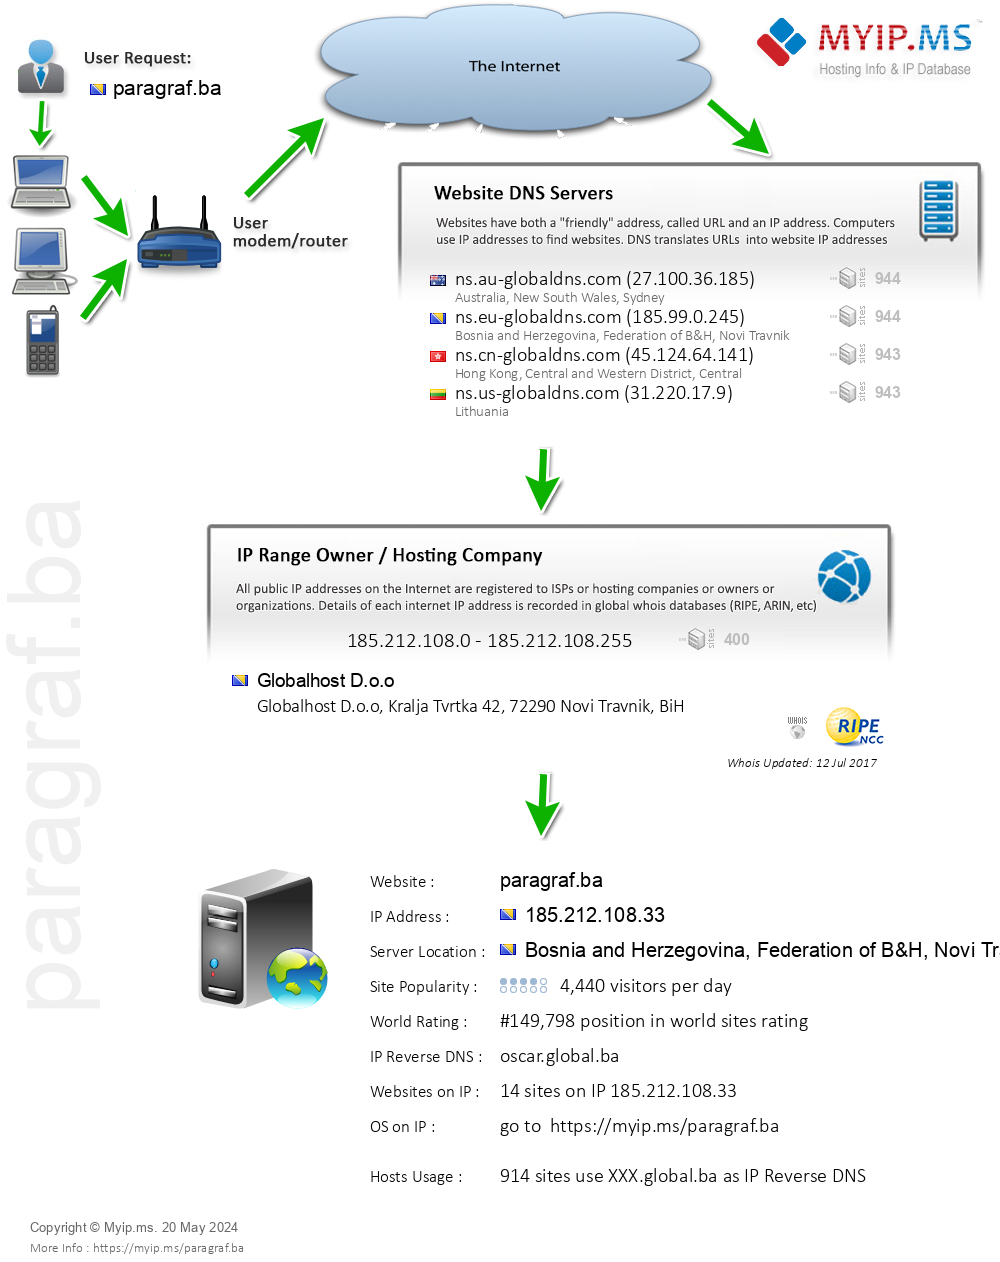 Paragraf.ba - Website Hosting Visual IP Diagram